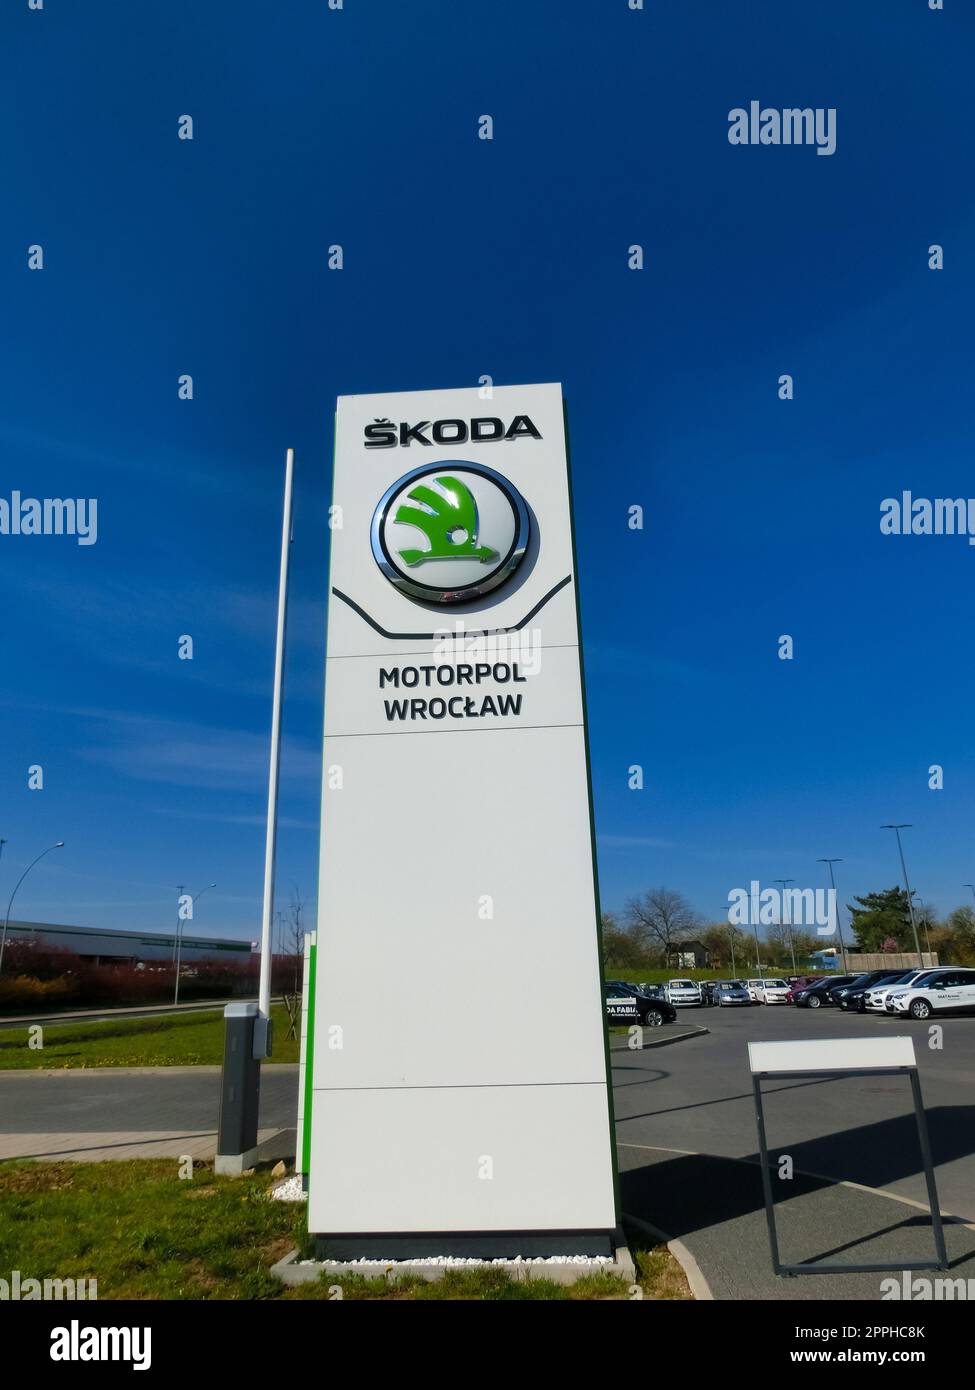 Emblème de Skoda Auto, constructeur automobile tchèque. Pas de gens, ciel bleu. Banque D'Images